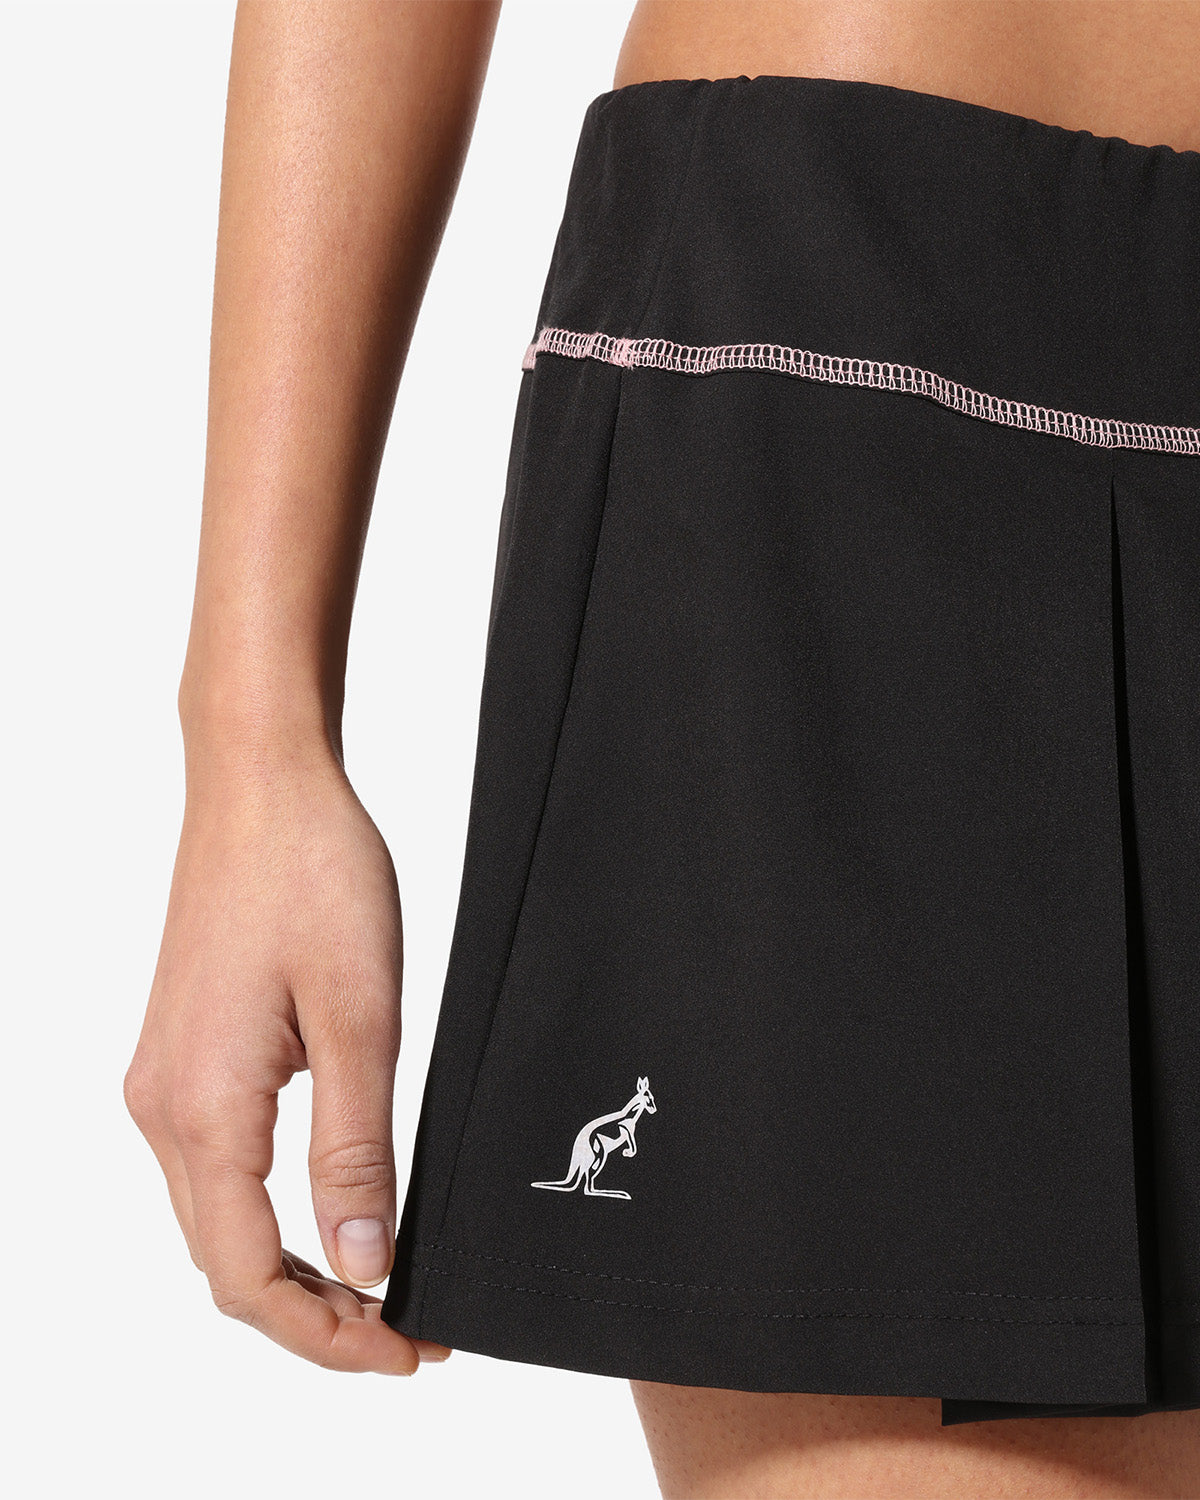 Match Skirt: Australian Tennis